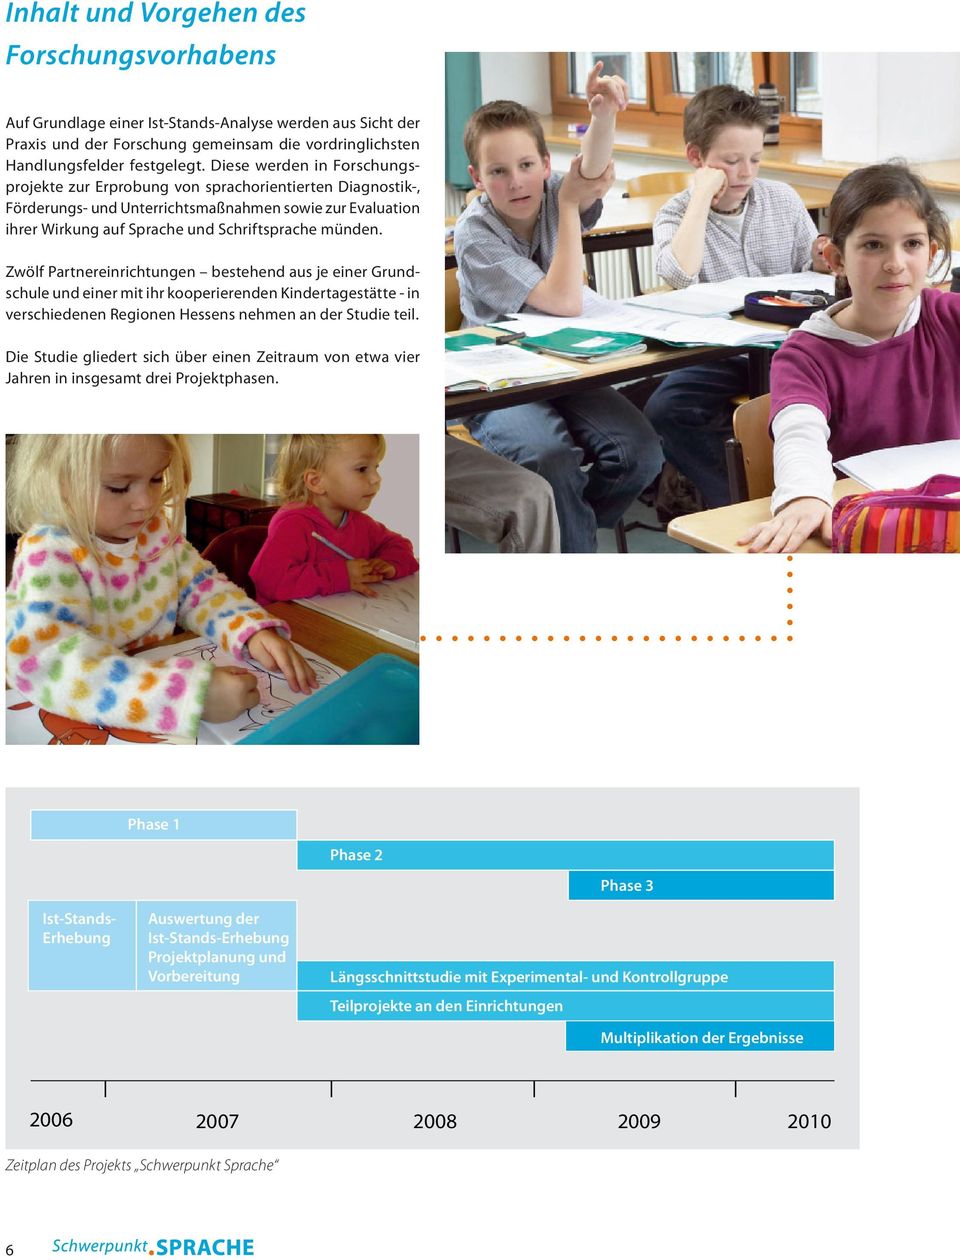 Zwölf Partnereinrichtungen bestehend aus je einer Grundschule und einer mit ihr kooperierenden Kindertagestätte - in verschiedenen Regionen Hessens nehmen an der Studie teil.